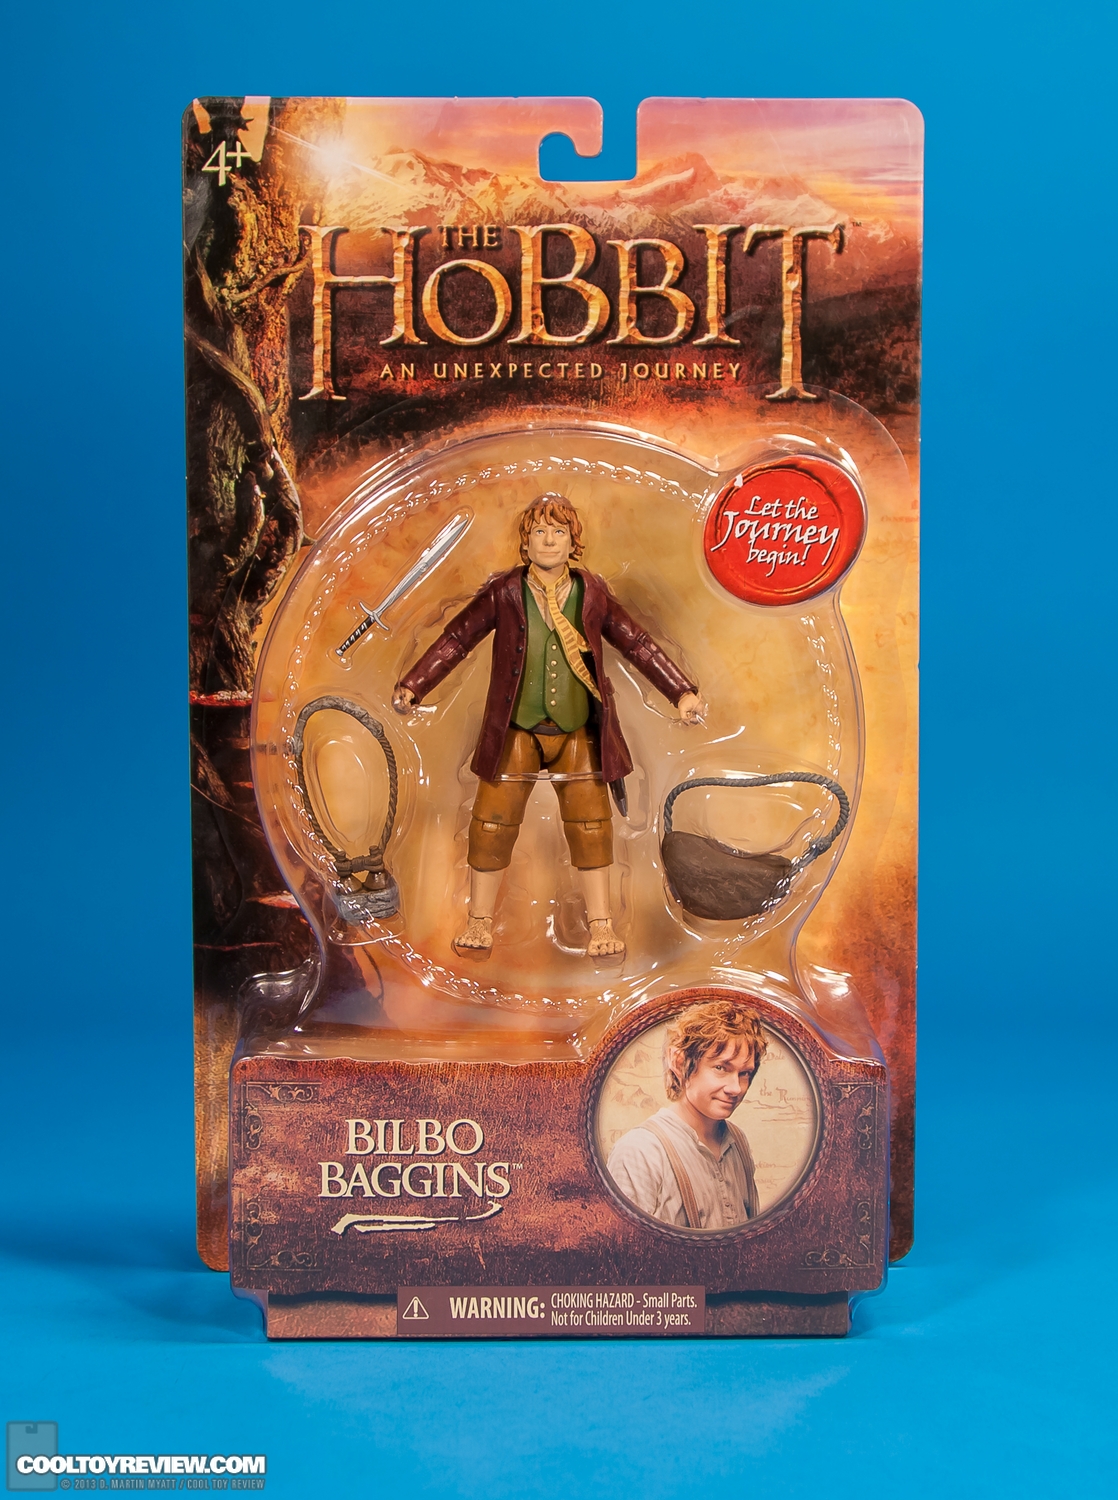 Bilbo-Baggins-6-Inch-Hobbit-Unexpected-Journey-The-Bridge-017.jpg